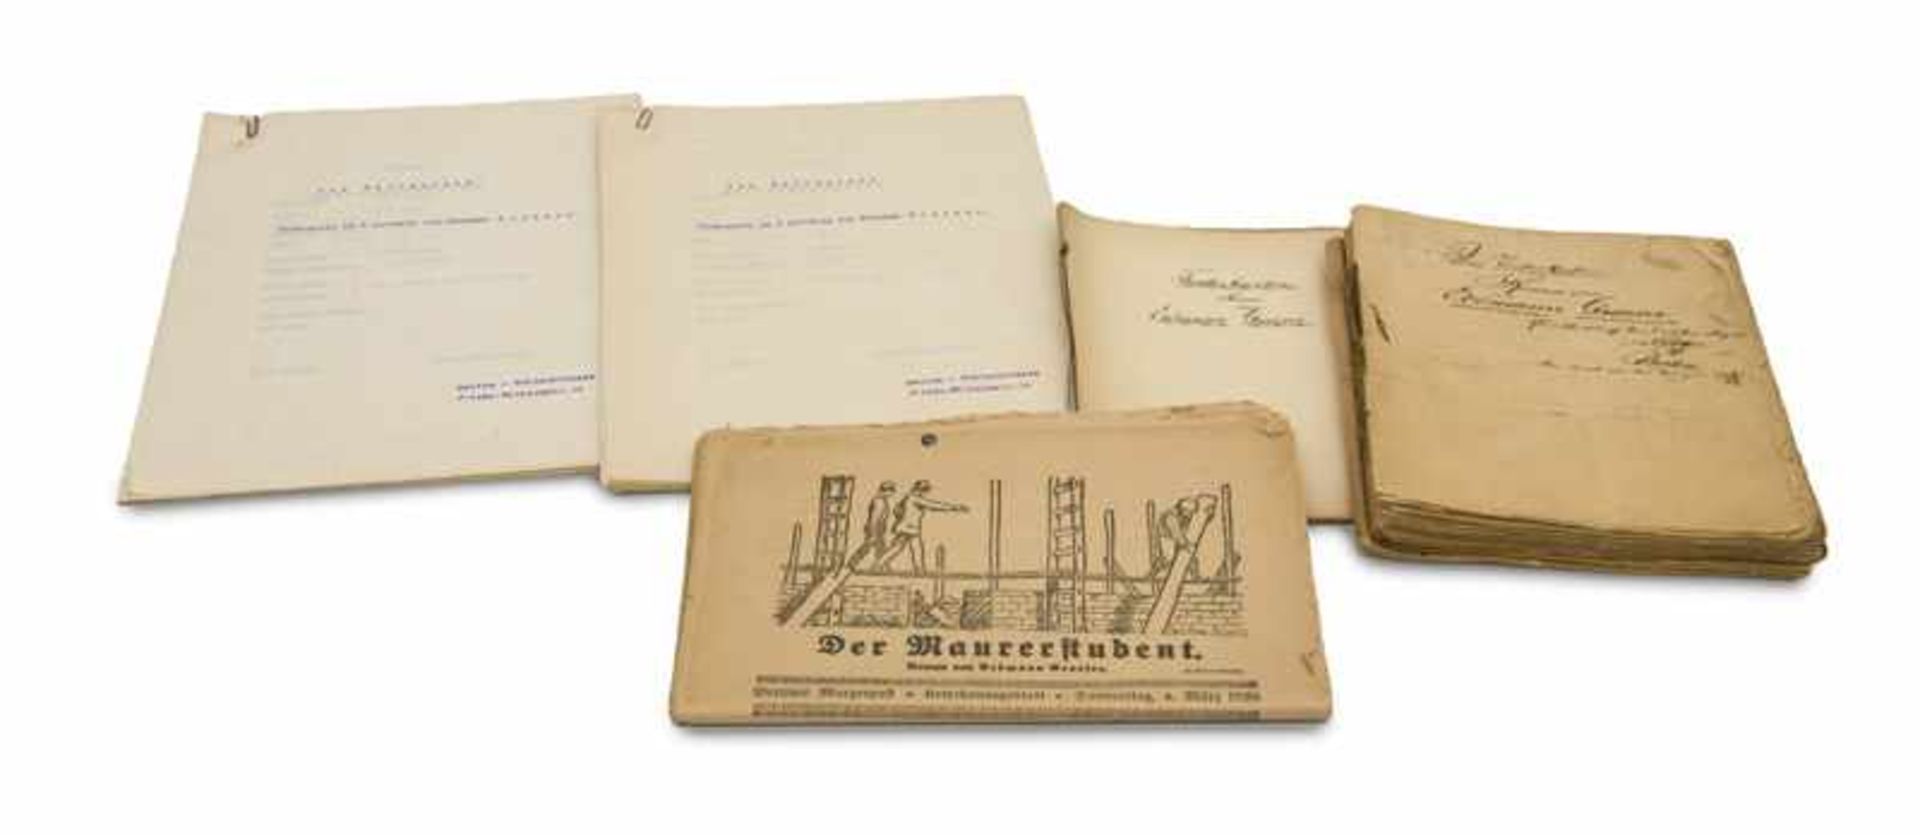 Collection of manuscripts by Berlin writer Erdmann Graeser as listed above. * Graeser, Erdmann